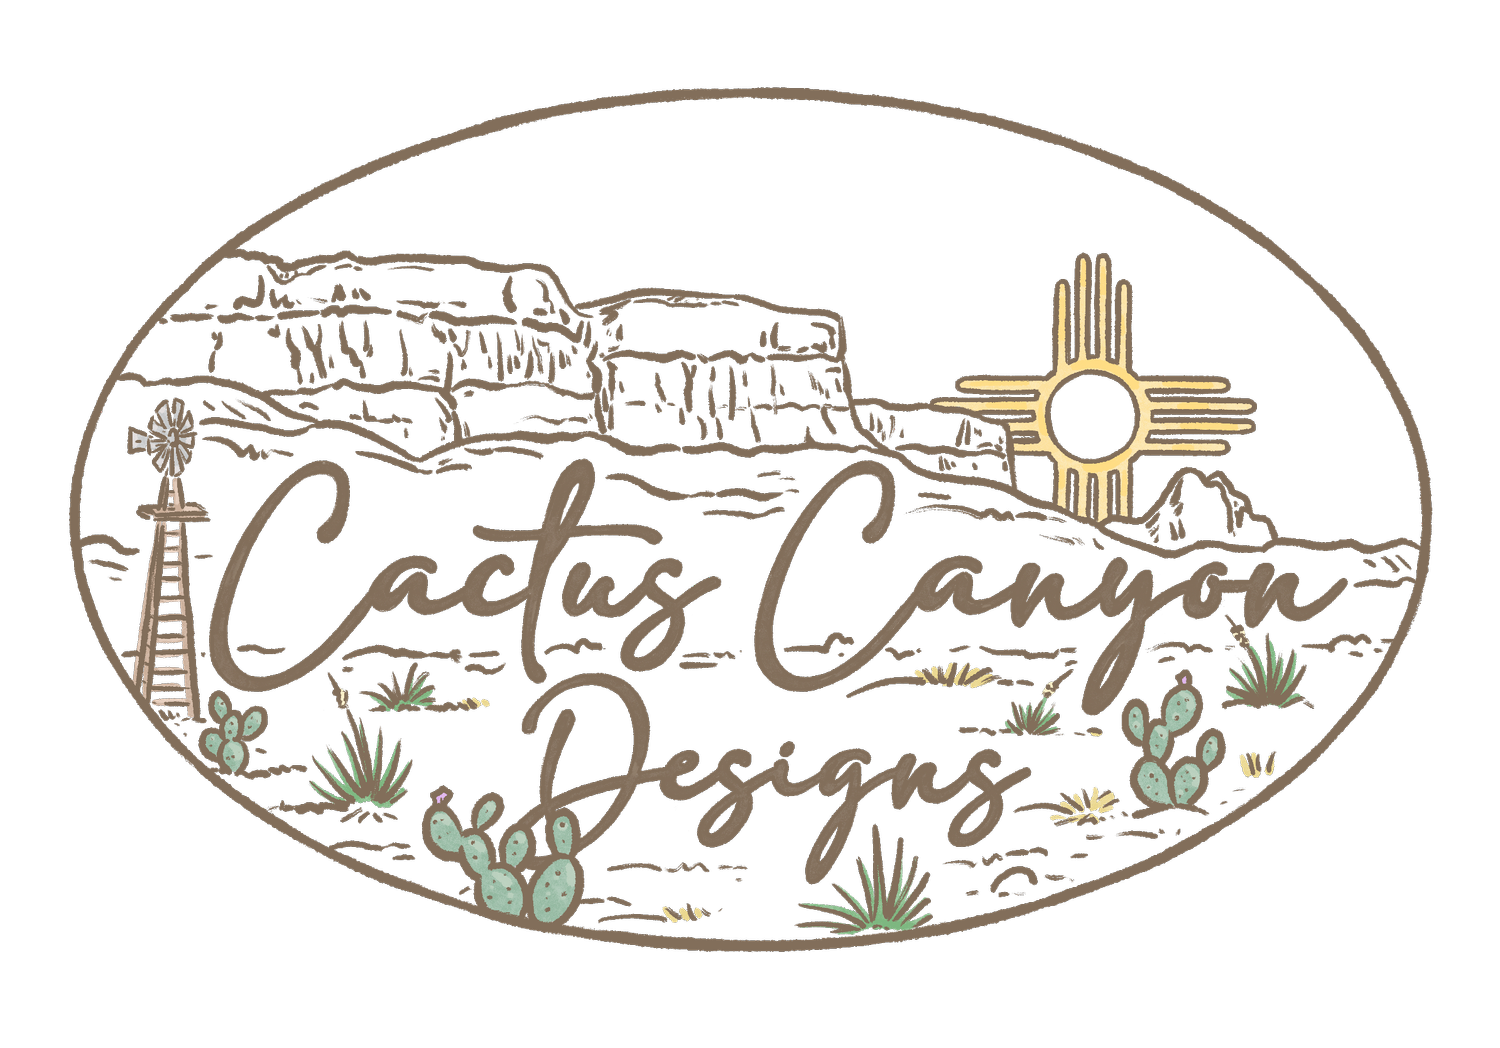 Cactus Canyon Designs